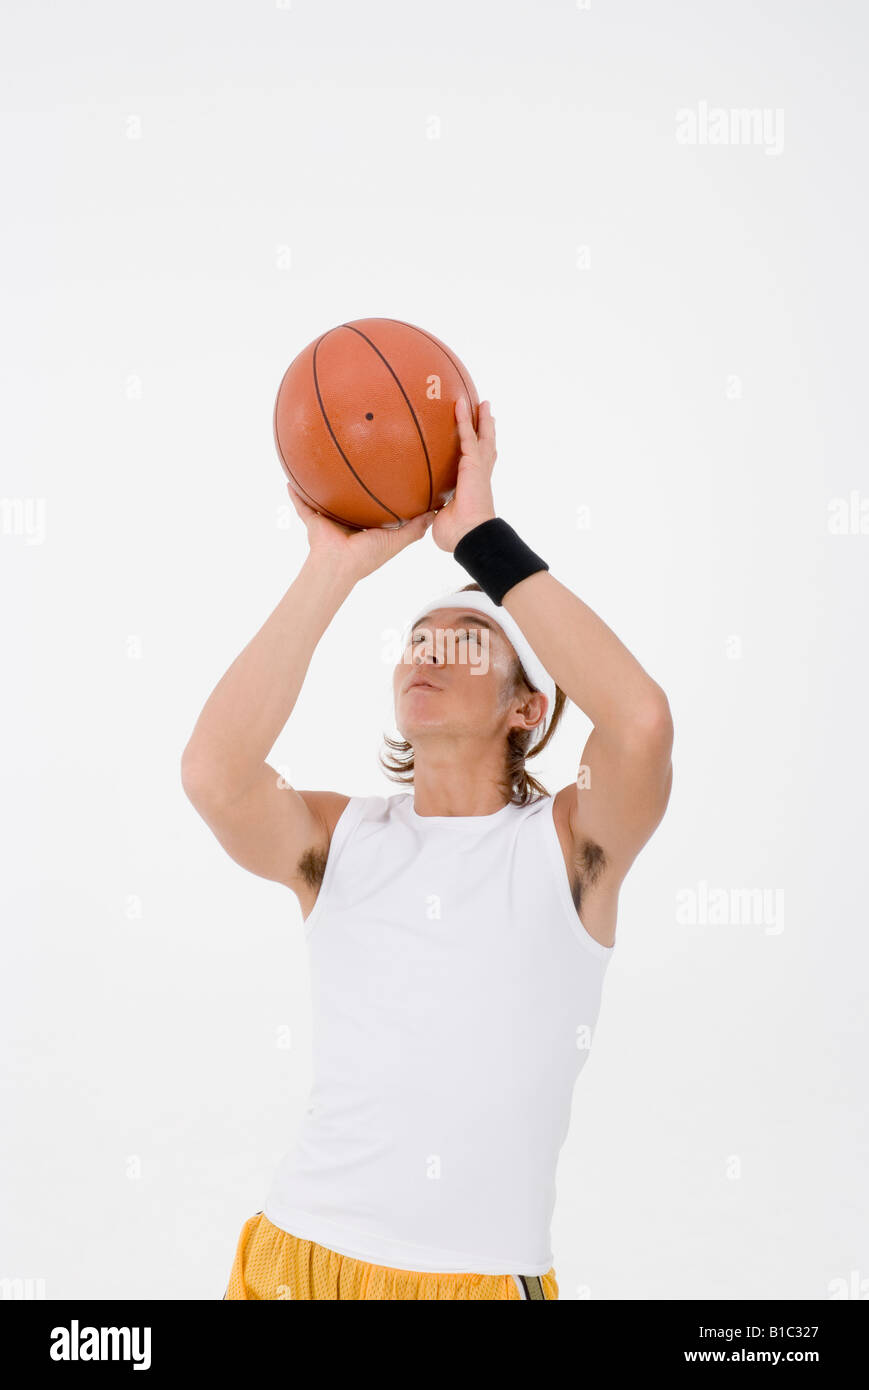 La pallacanestro di tiro del giocatore Foto Stock